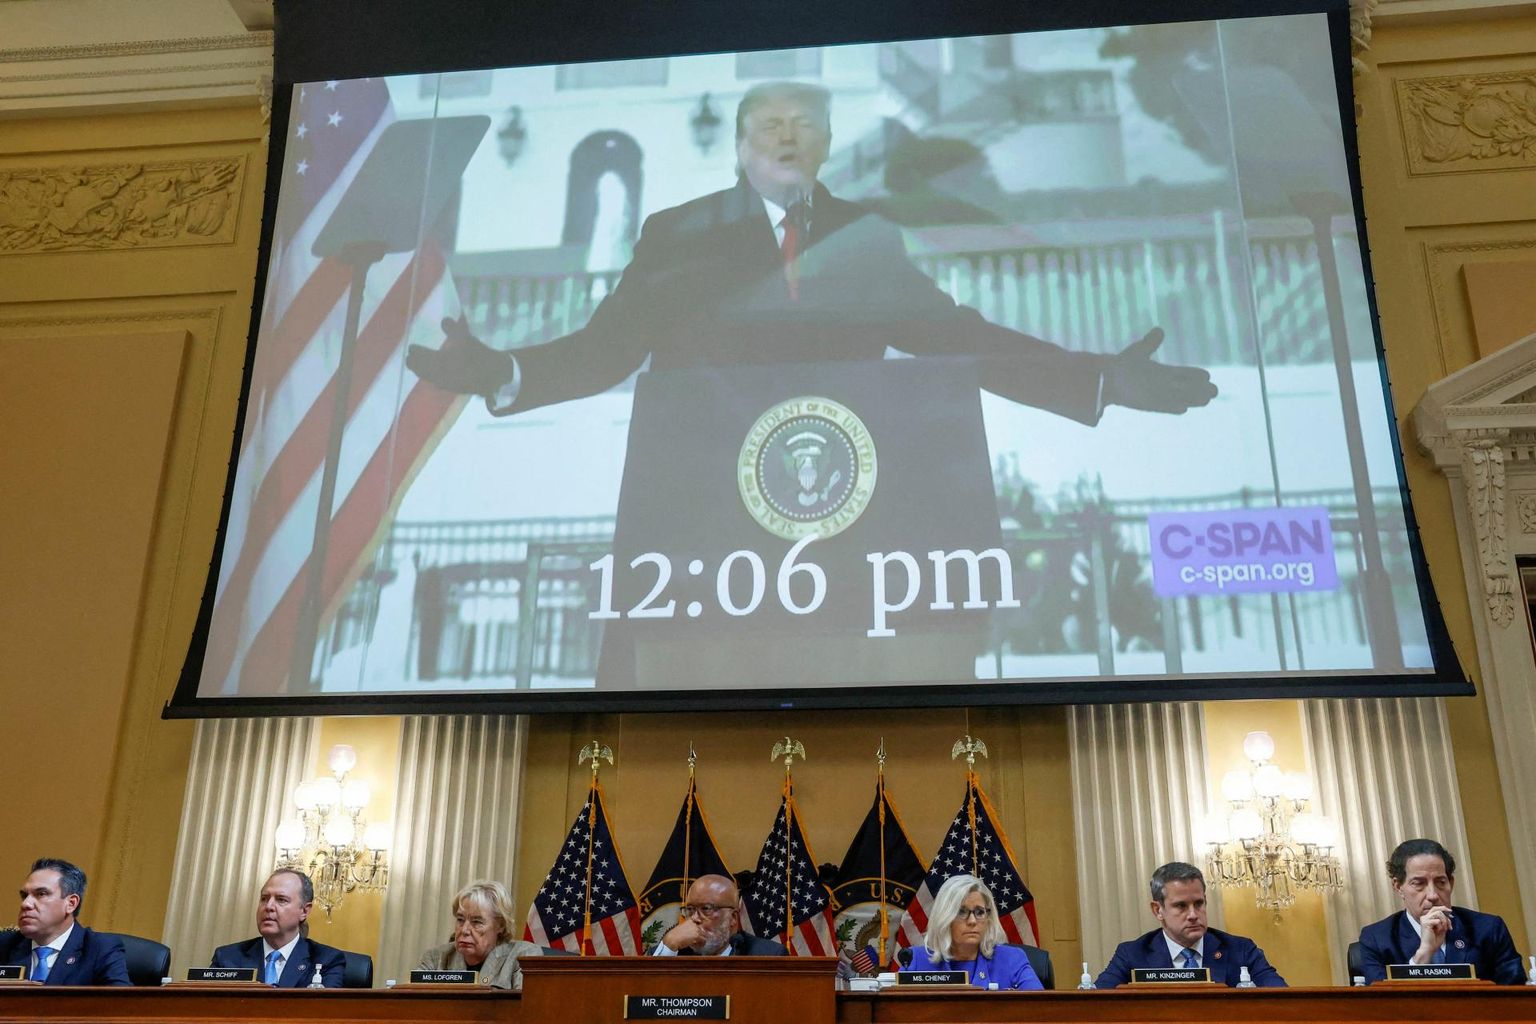 Ühendriikide esindajatekoja uurimiskomisjon näitas videot Trumpist 6. jaanuaril oma toetajatele Washingtonis kõnet pidamas.